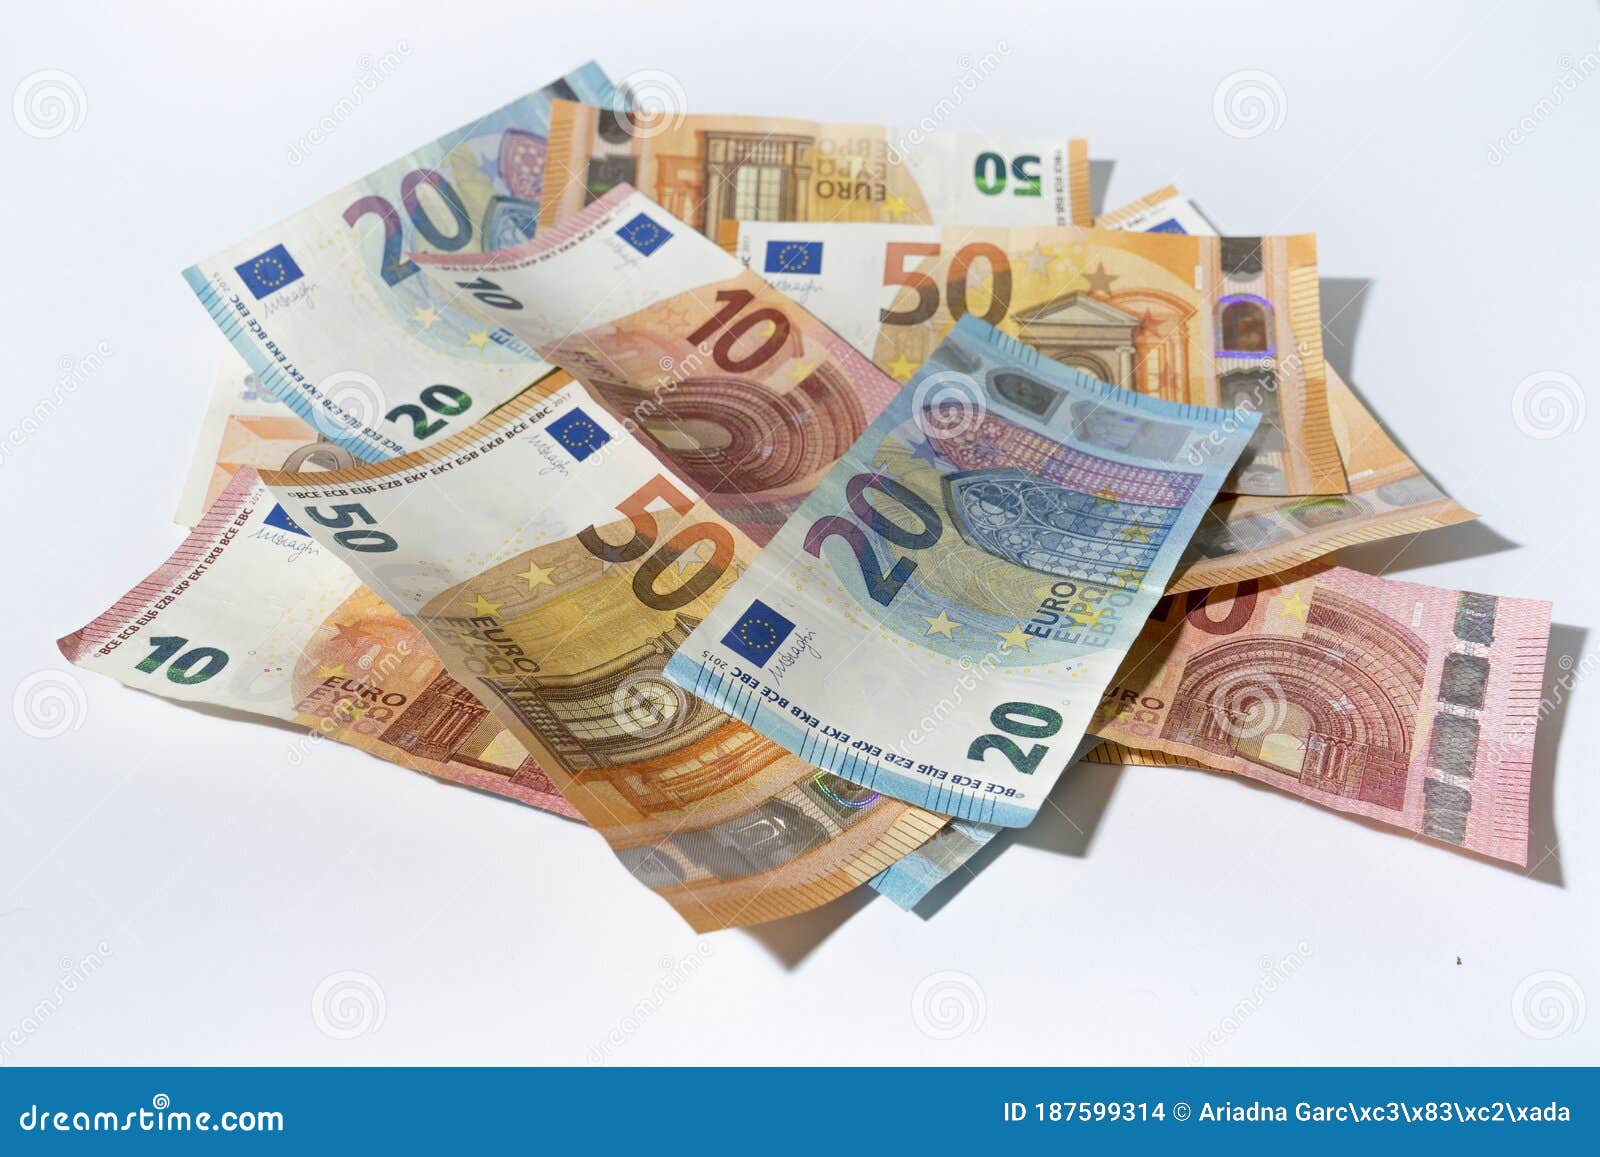 euro money bills on a white background